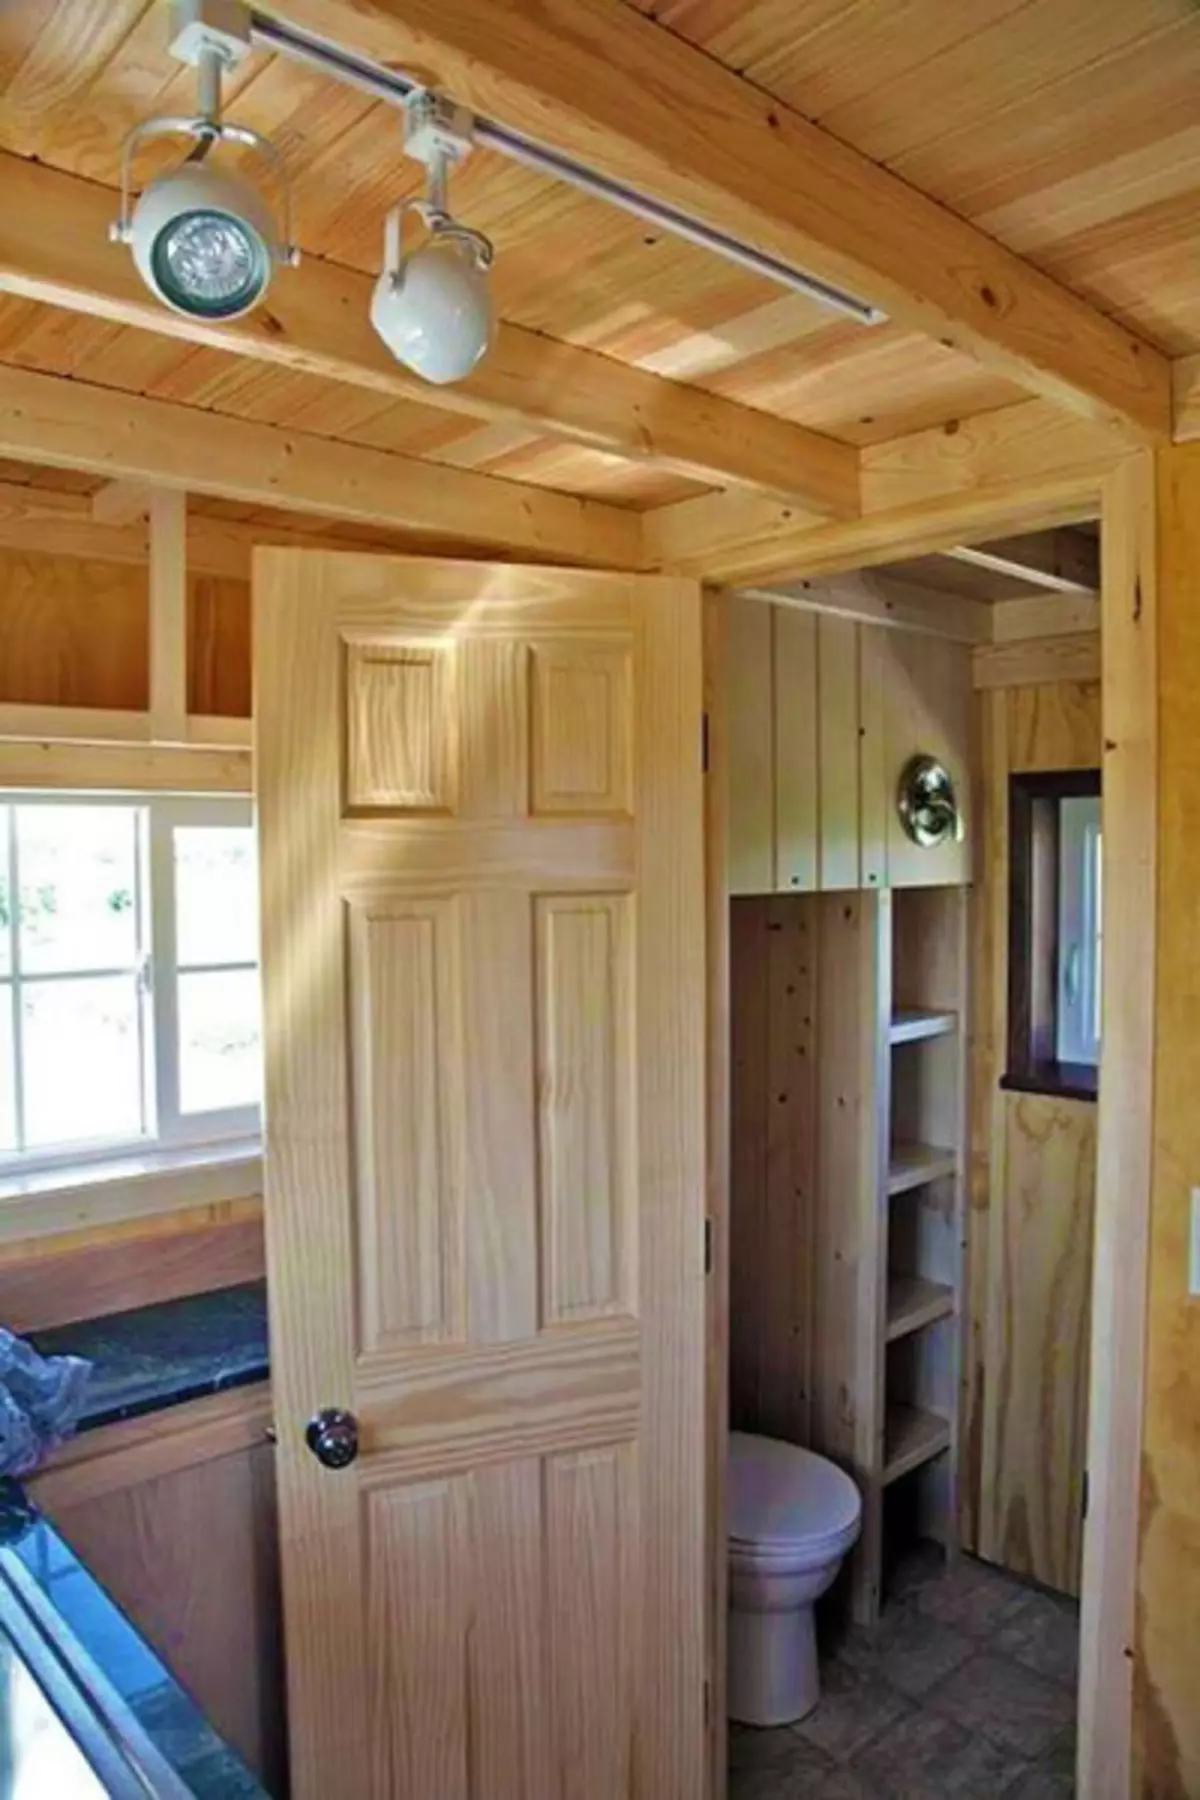 Babai dhe djali ndërtuan një shtëpi komode të vogël 18 sq m për një jetë të thjeshtë